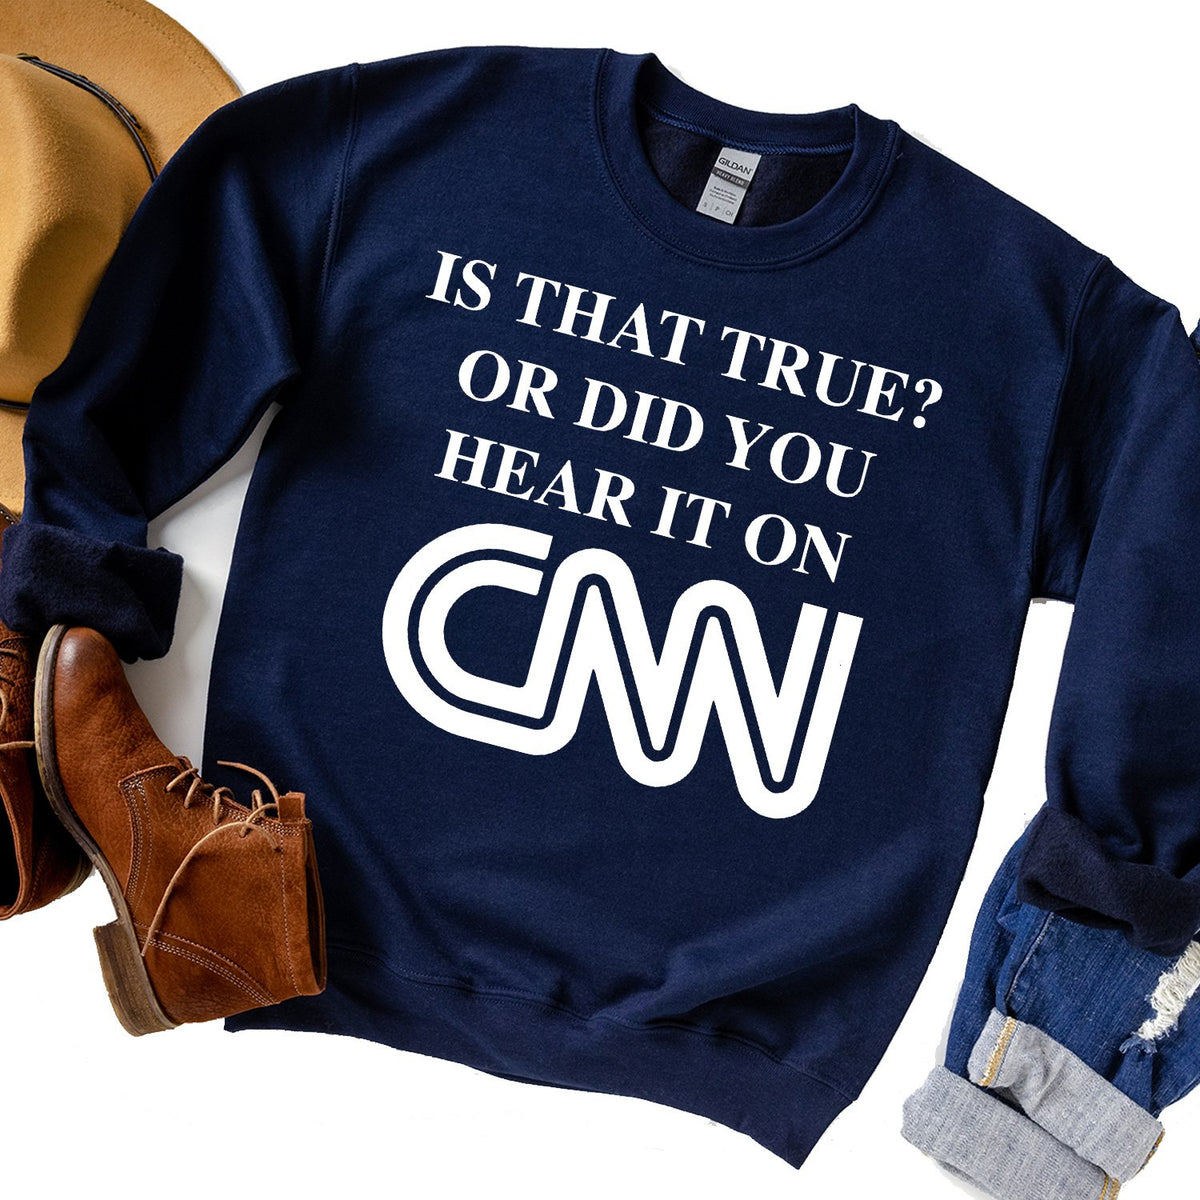 Is That True? Or Did You Hear It On CNN - Long Sleeve Heavy Crewneck Sweatshirt